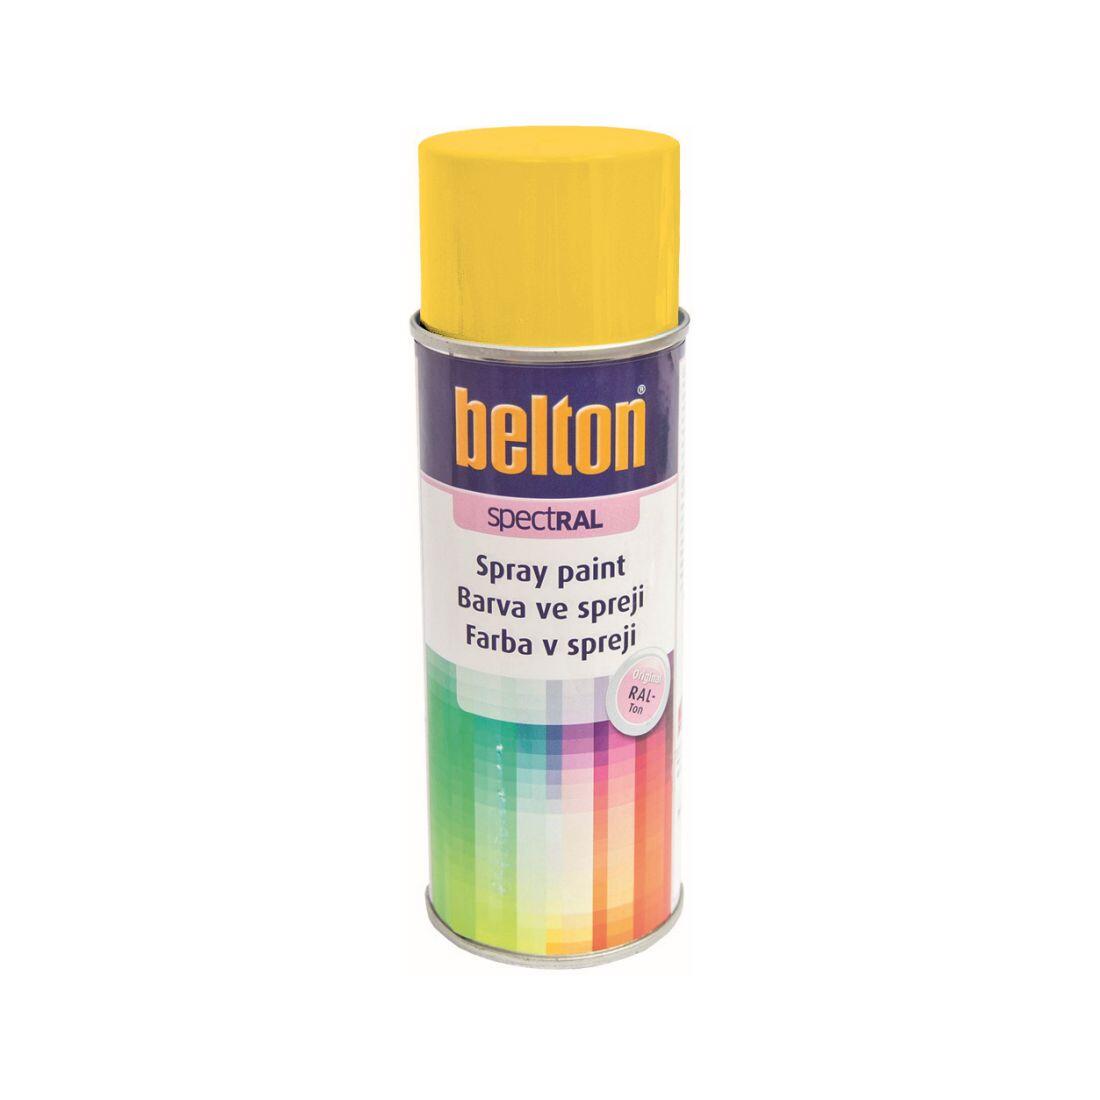 barva ve spreji BELTON RAL 1021, 400ml ŽL hořčičná 0.31 Kg MAXMIX Sklad14 825380 12